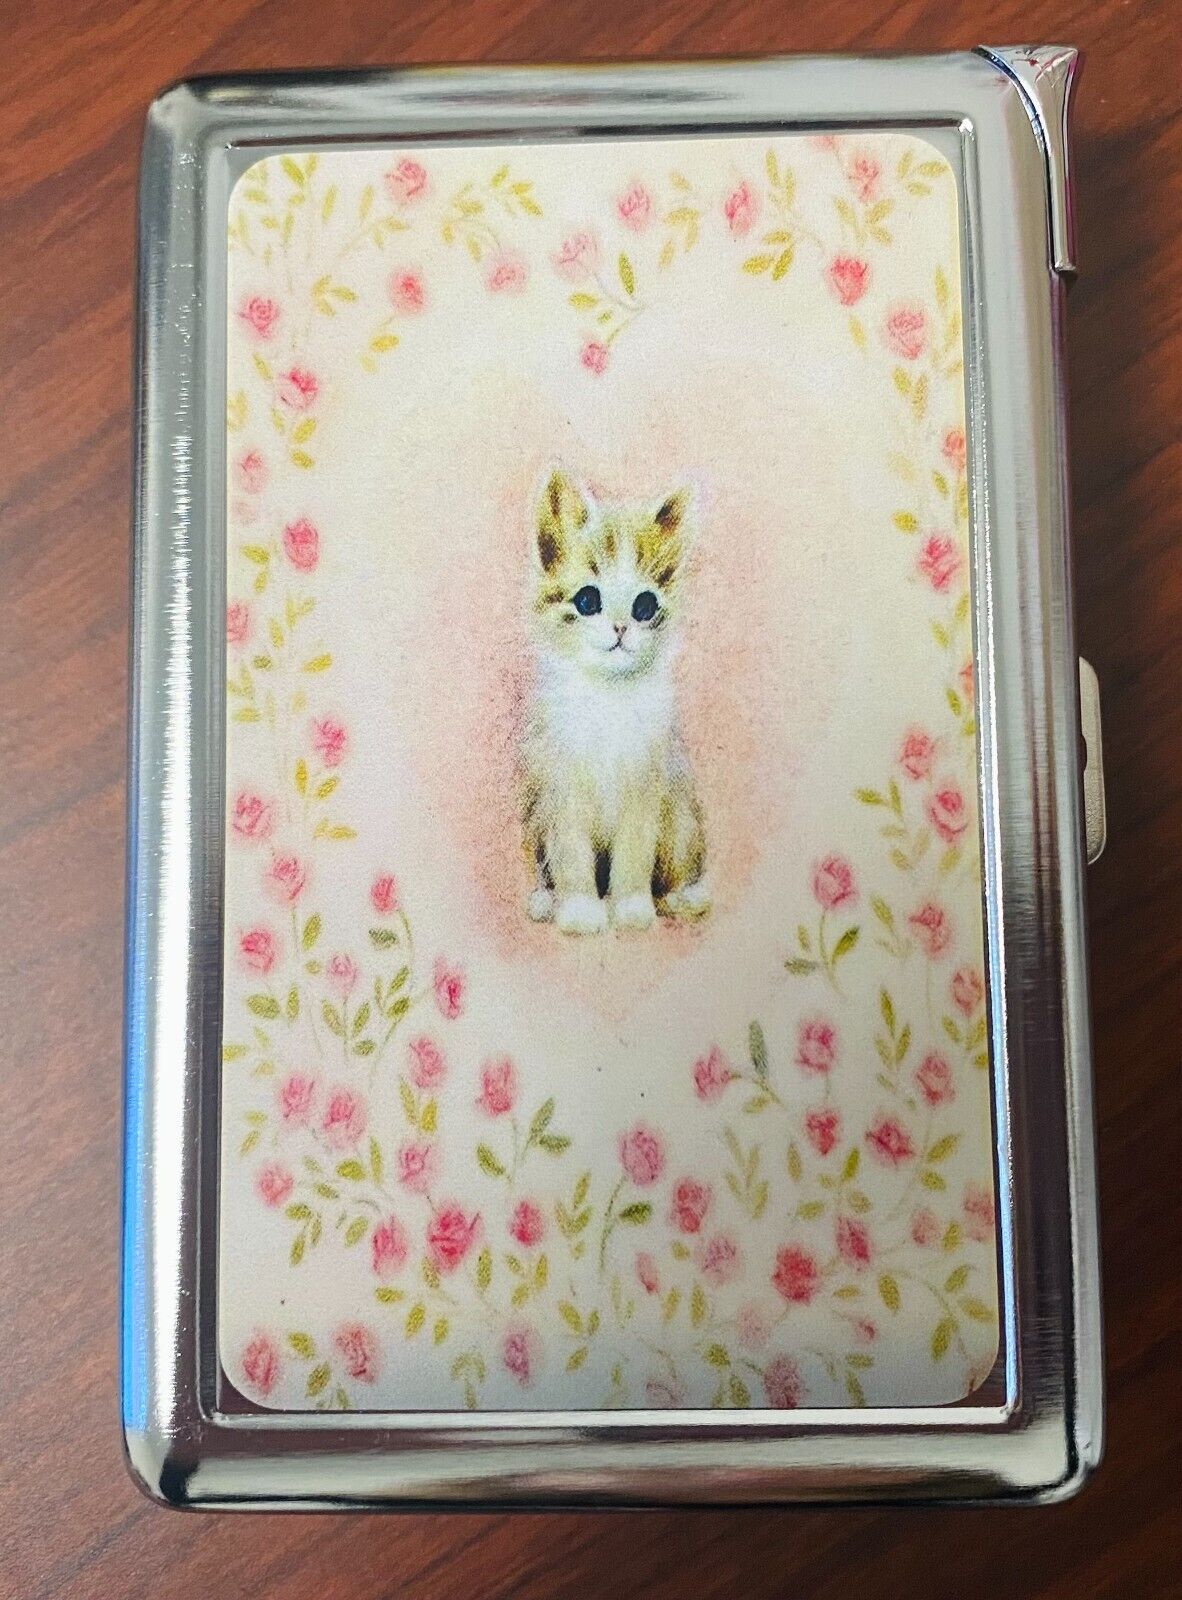 Vintage Heart Kitten C2 Image Cigarette Case with Built in Lighter Metal Wallet